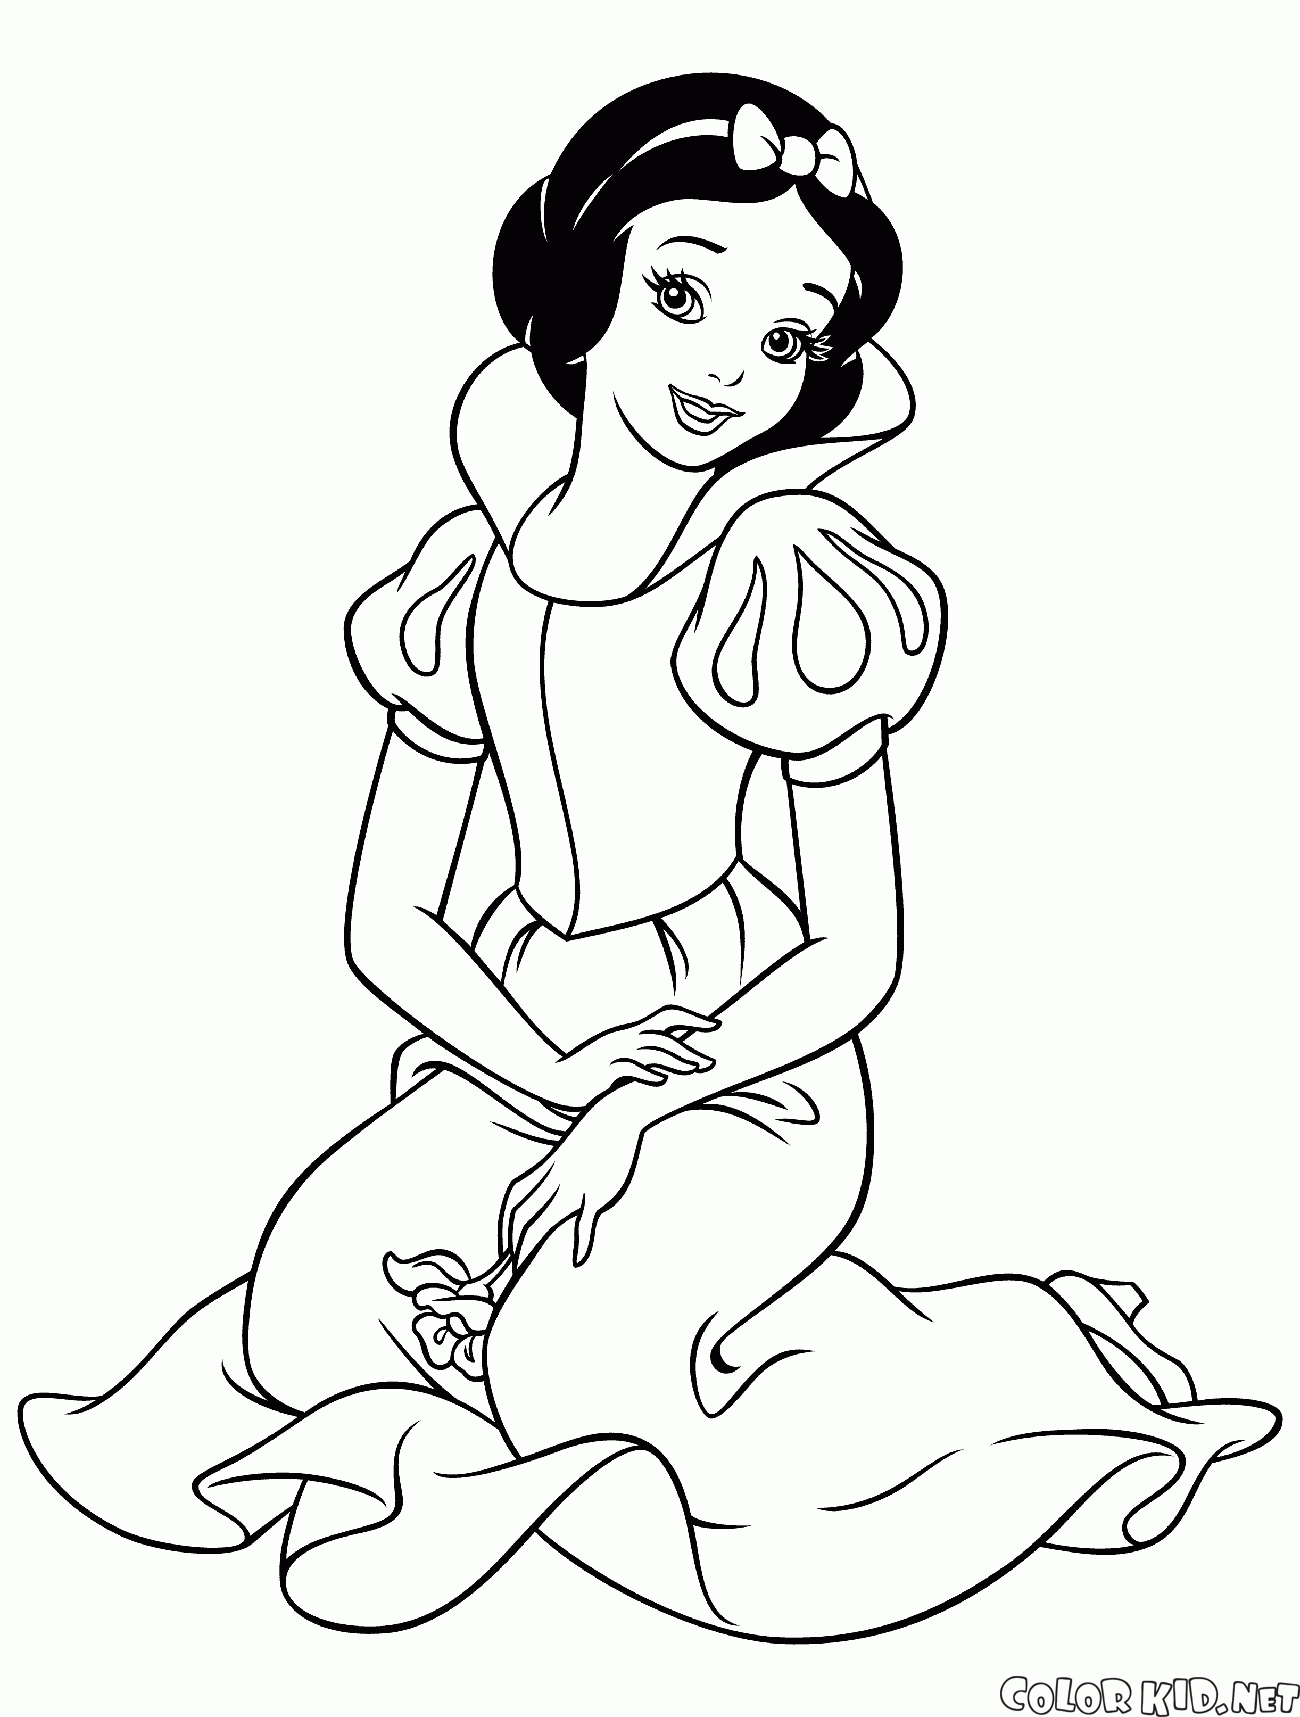 最全迪士尼公主系列头像合集 - 白雪公主人物简笔画图片大全彩色 - 方城县实验高中